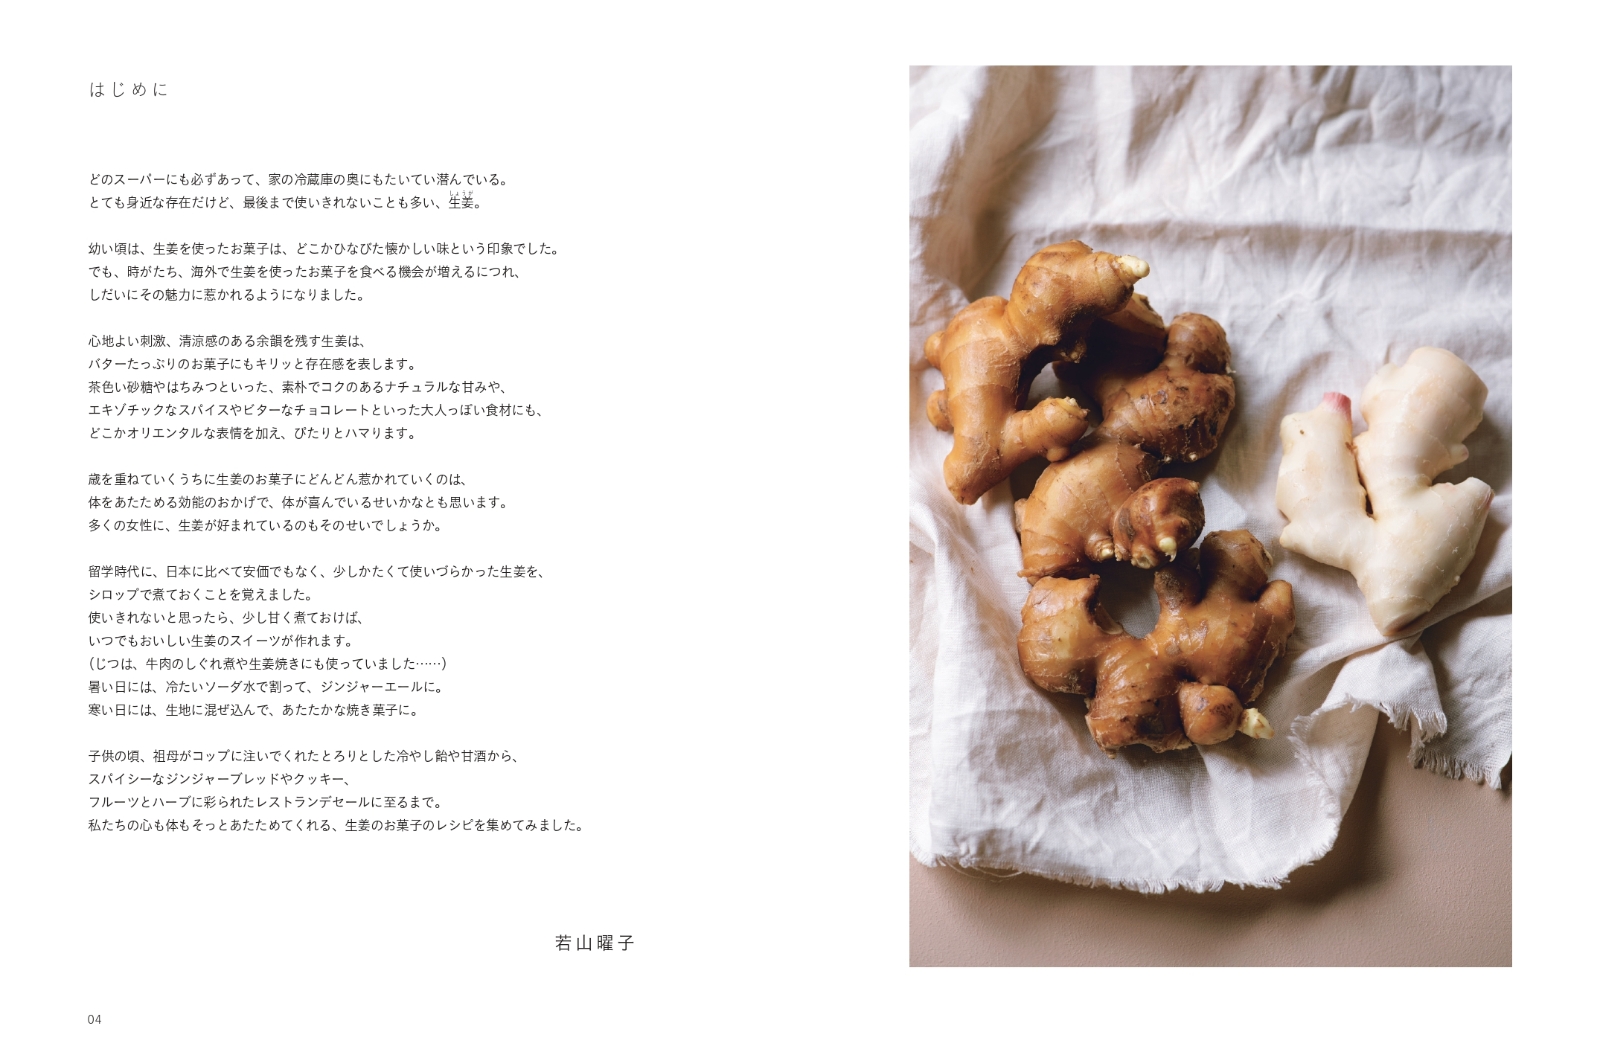 ジンジャースイーツ 生姜 ジンジャーシロップ キャンディードジンジャーで作るやさしいお菓子 立東舎 料理の本棚 本 楽天ブックス